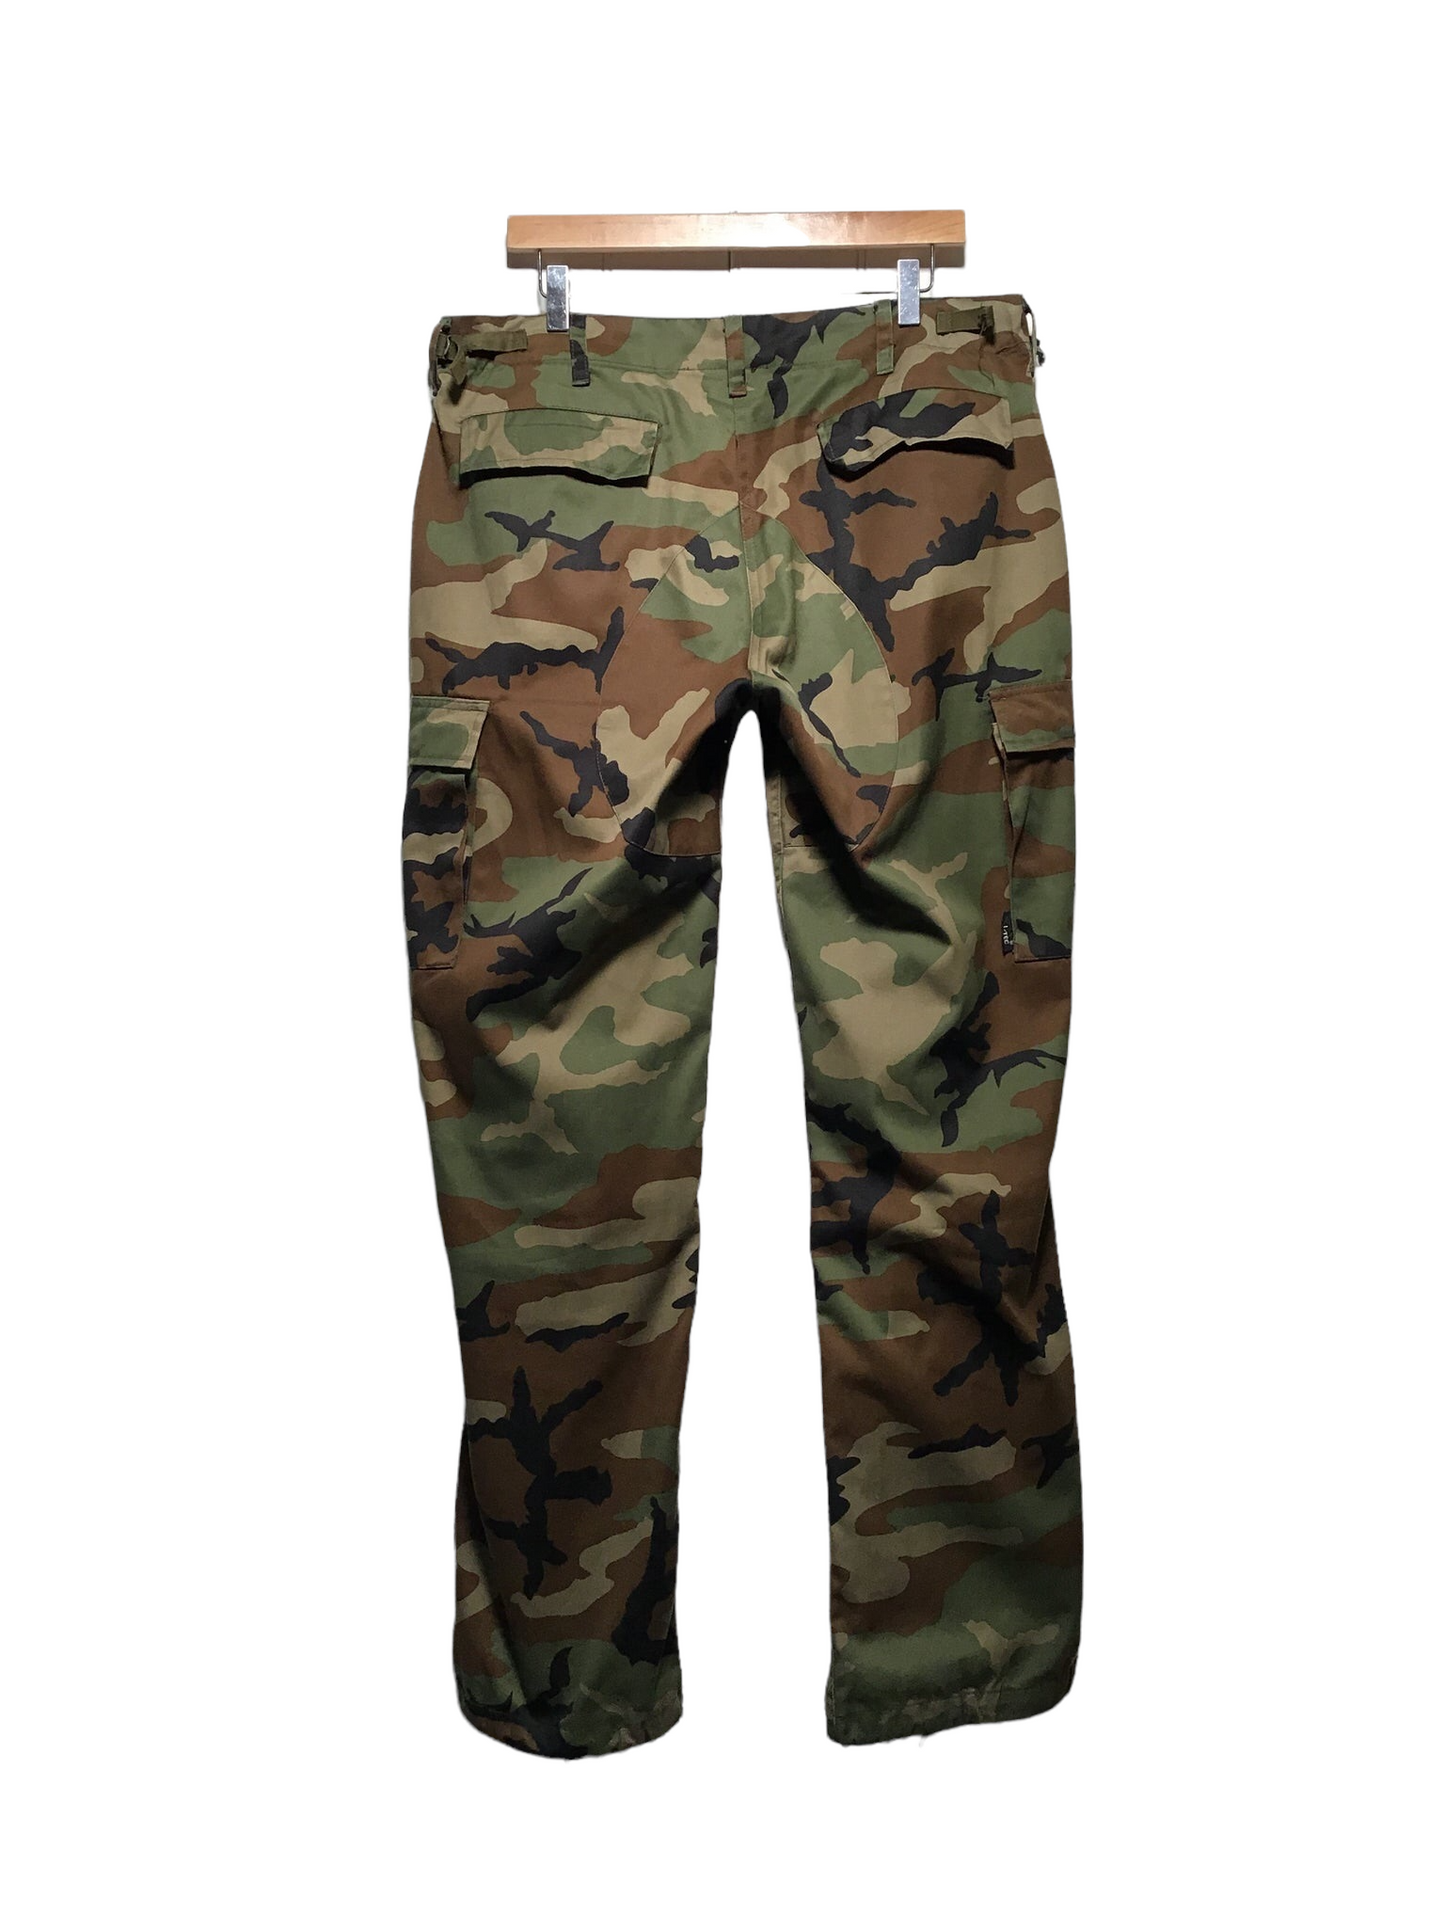 Army Pants (36X33)